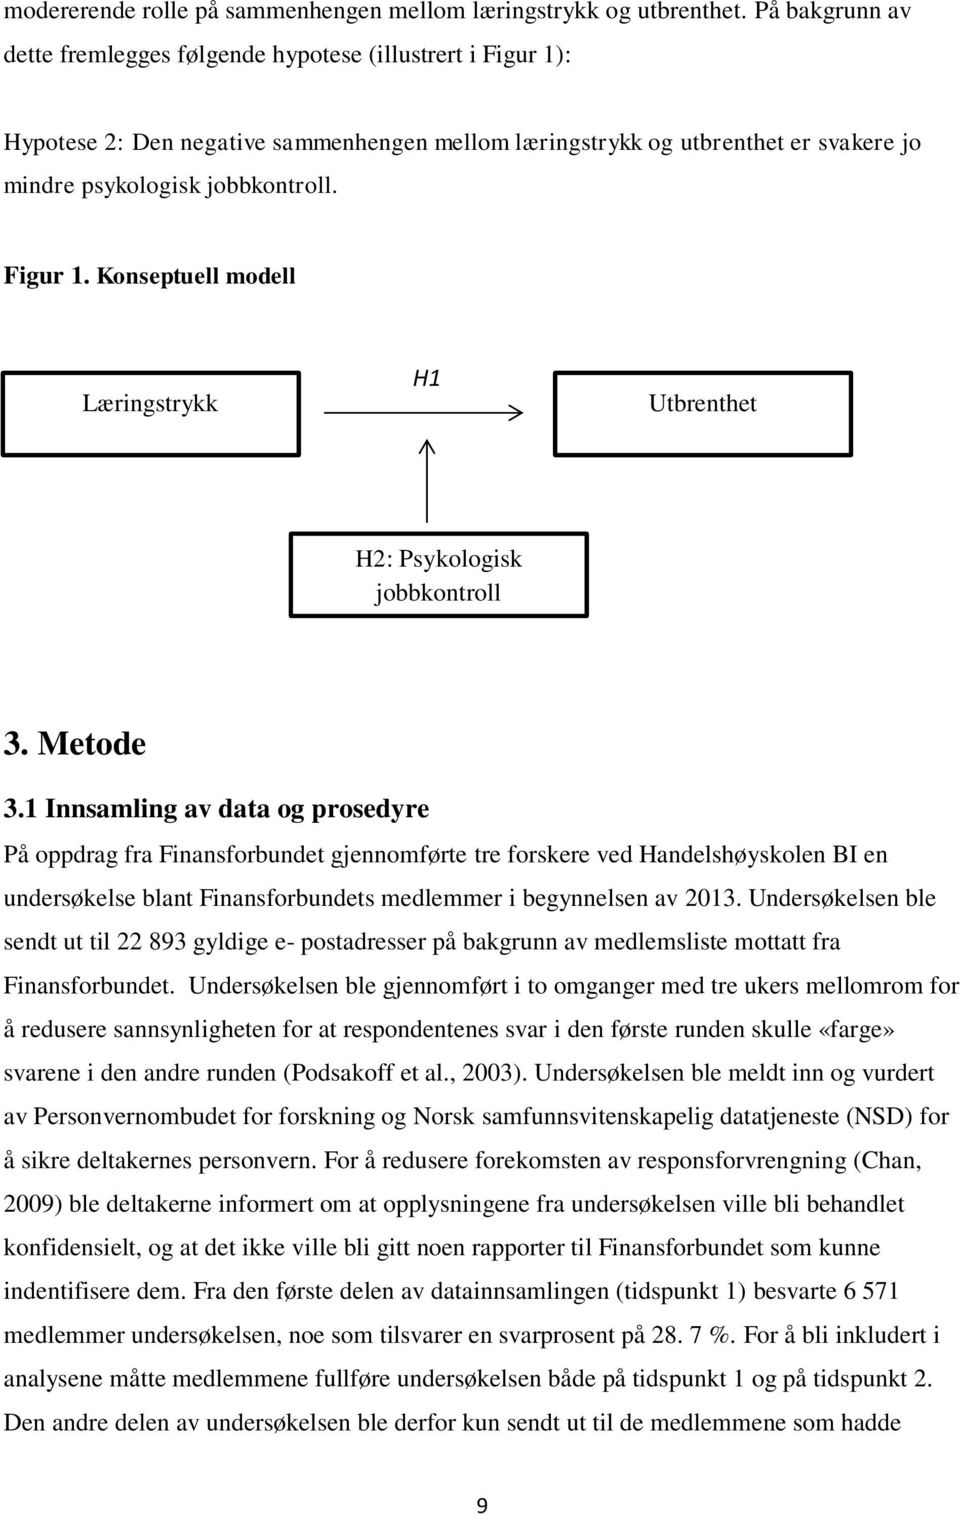 Figur 1. Konseptuell modell Læringstrykk H1 Utbrenthet H2: Psykologisk jobbkontroll 3. Metode 3.